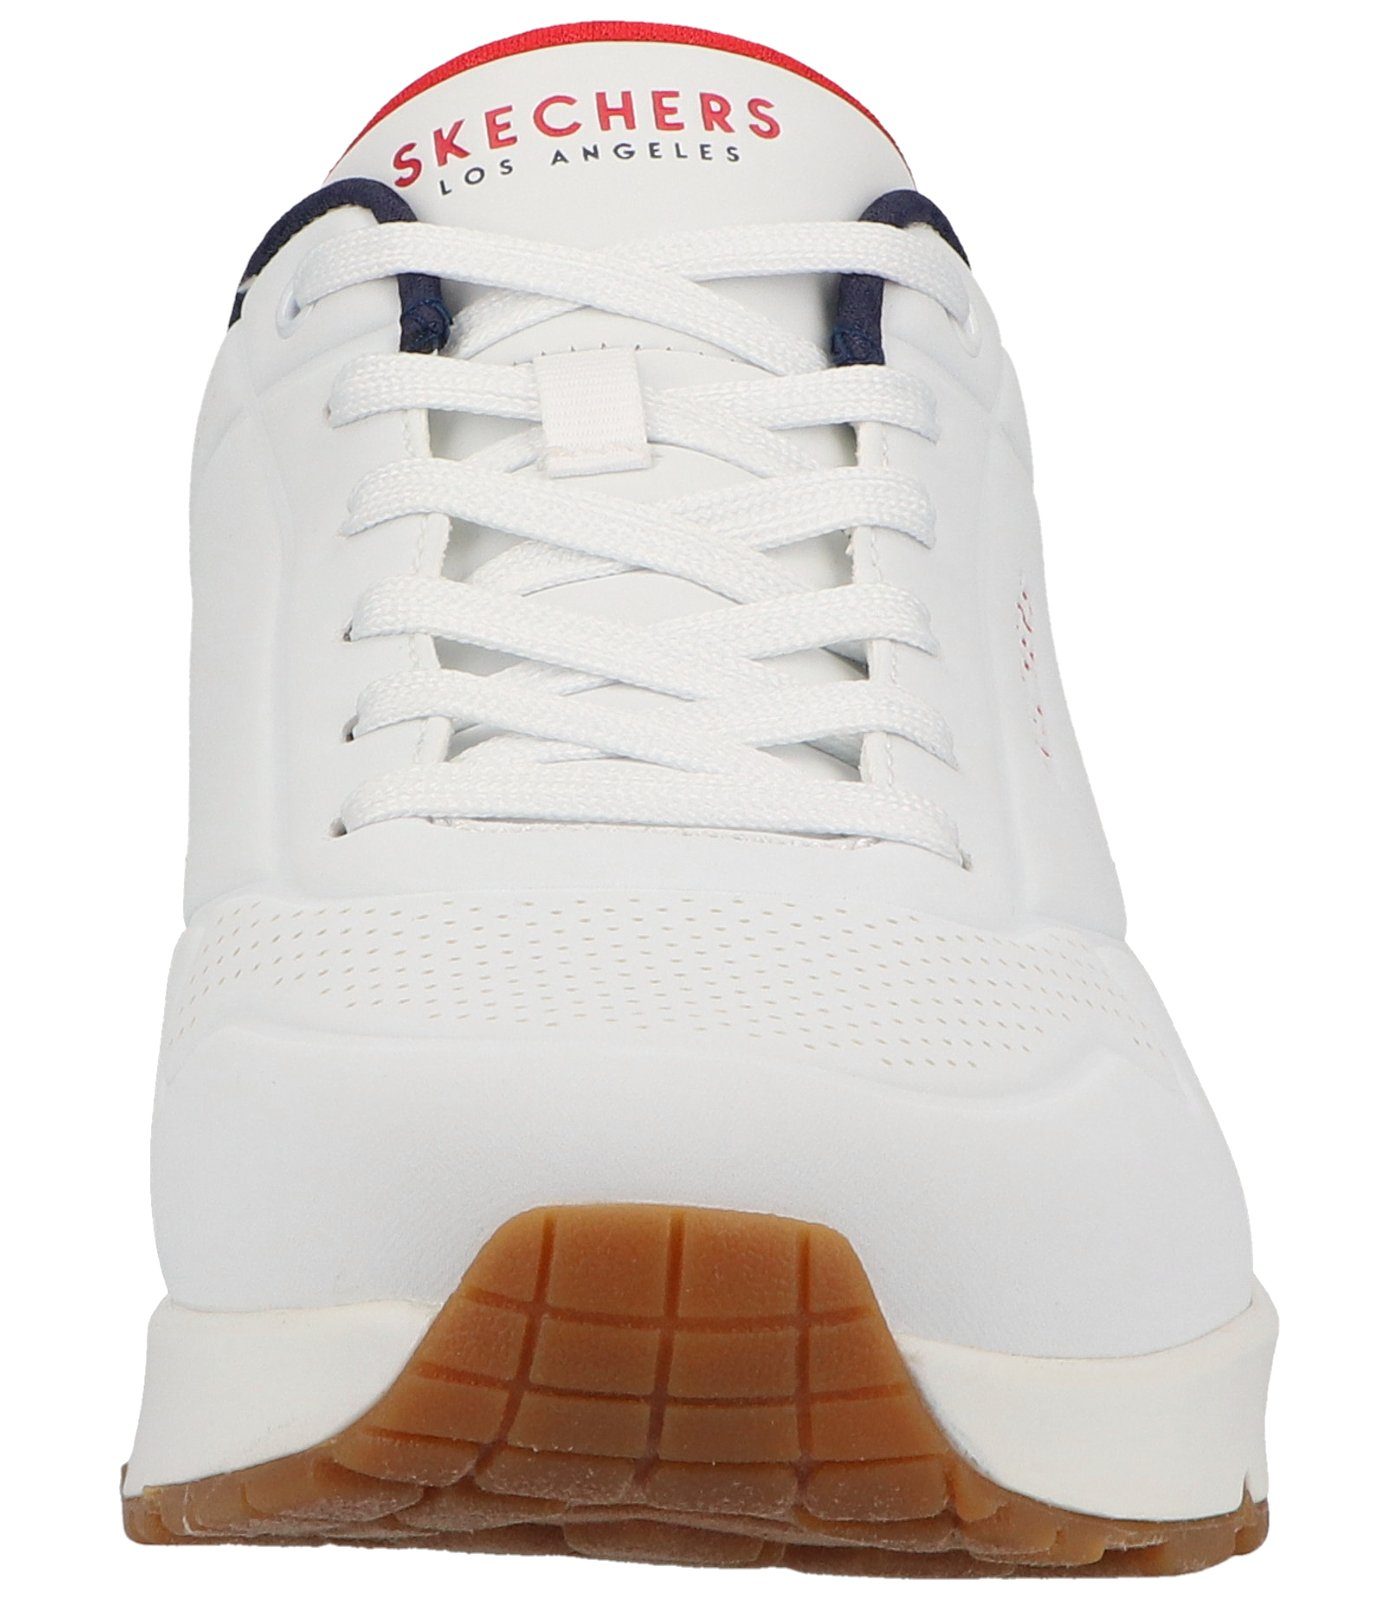 Lederimitat Sneaker Skechers Sneaker white/navy/red